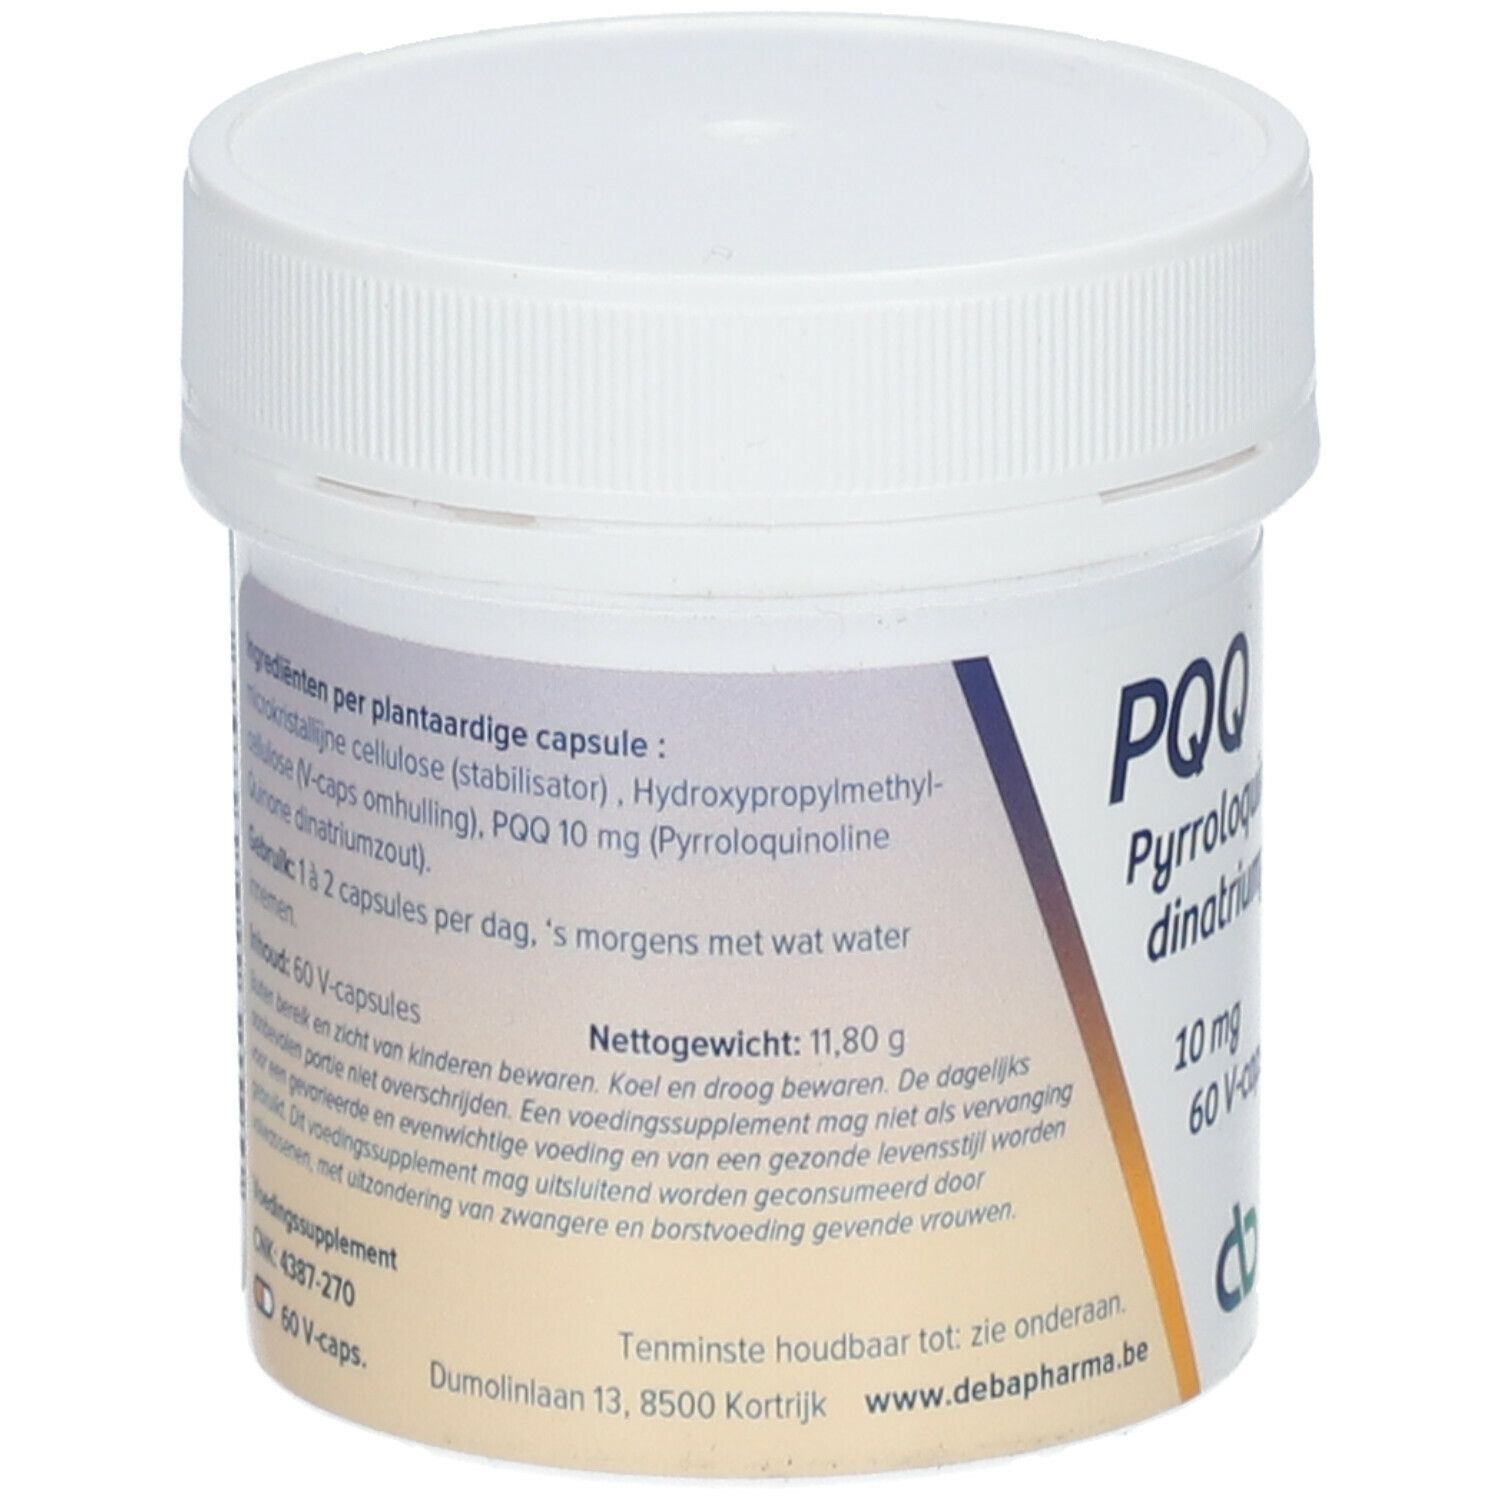 Deba Pharma PQQ 10 mg